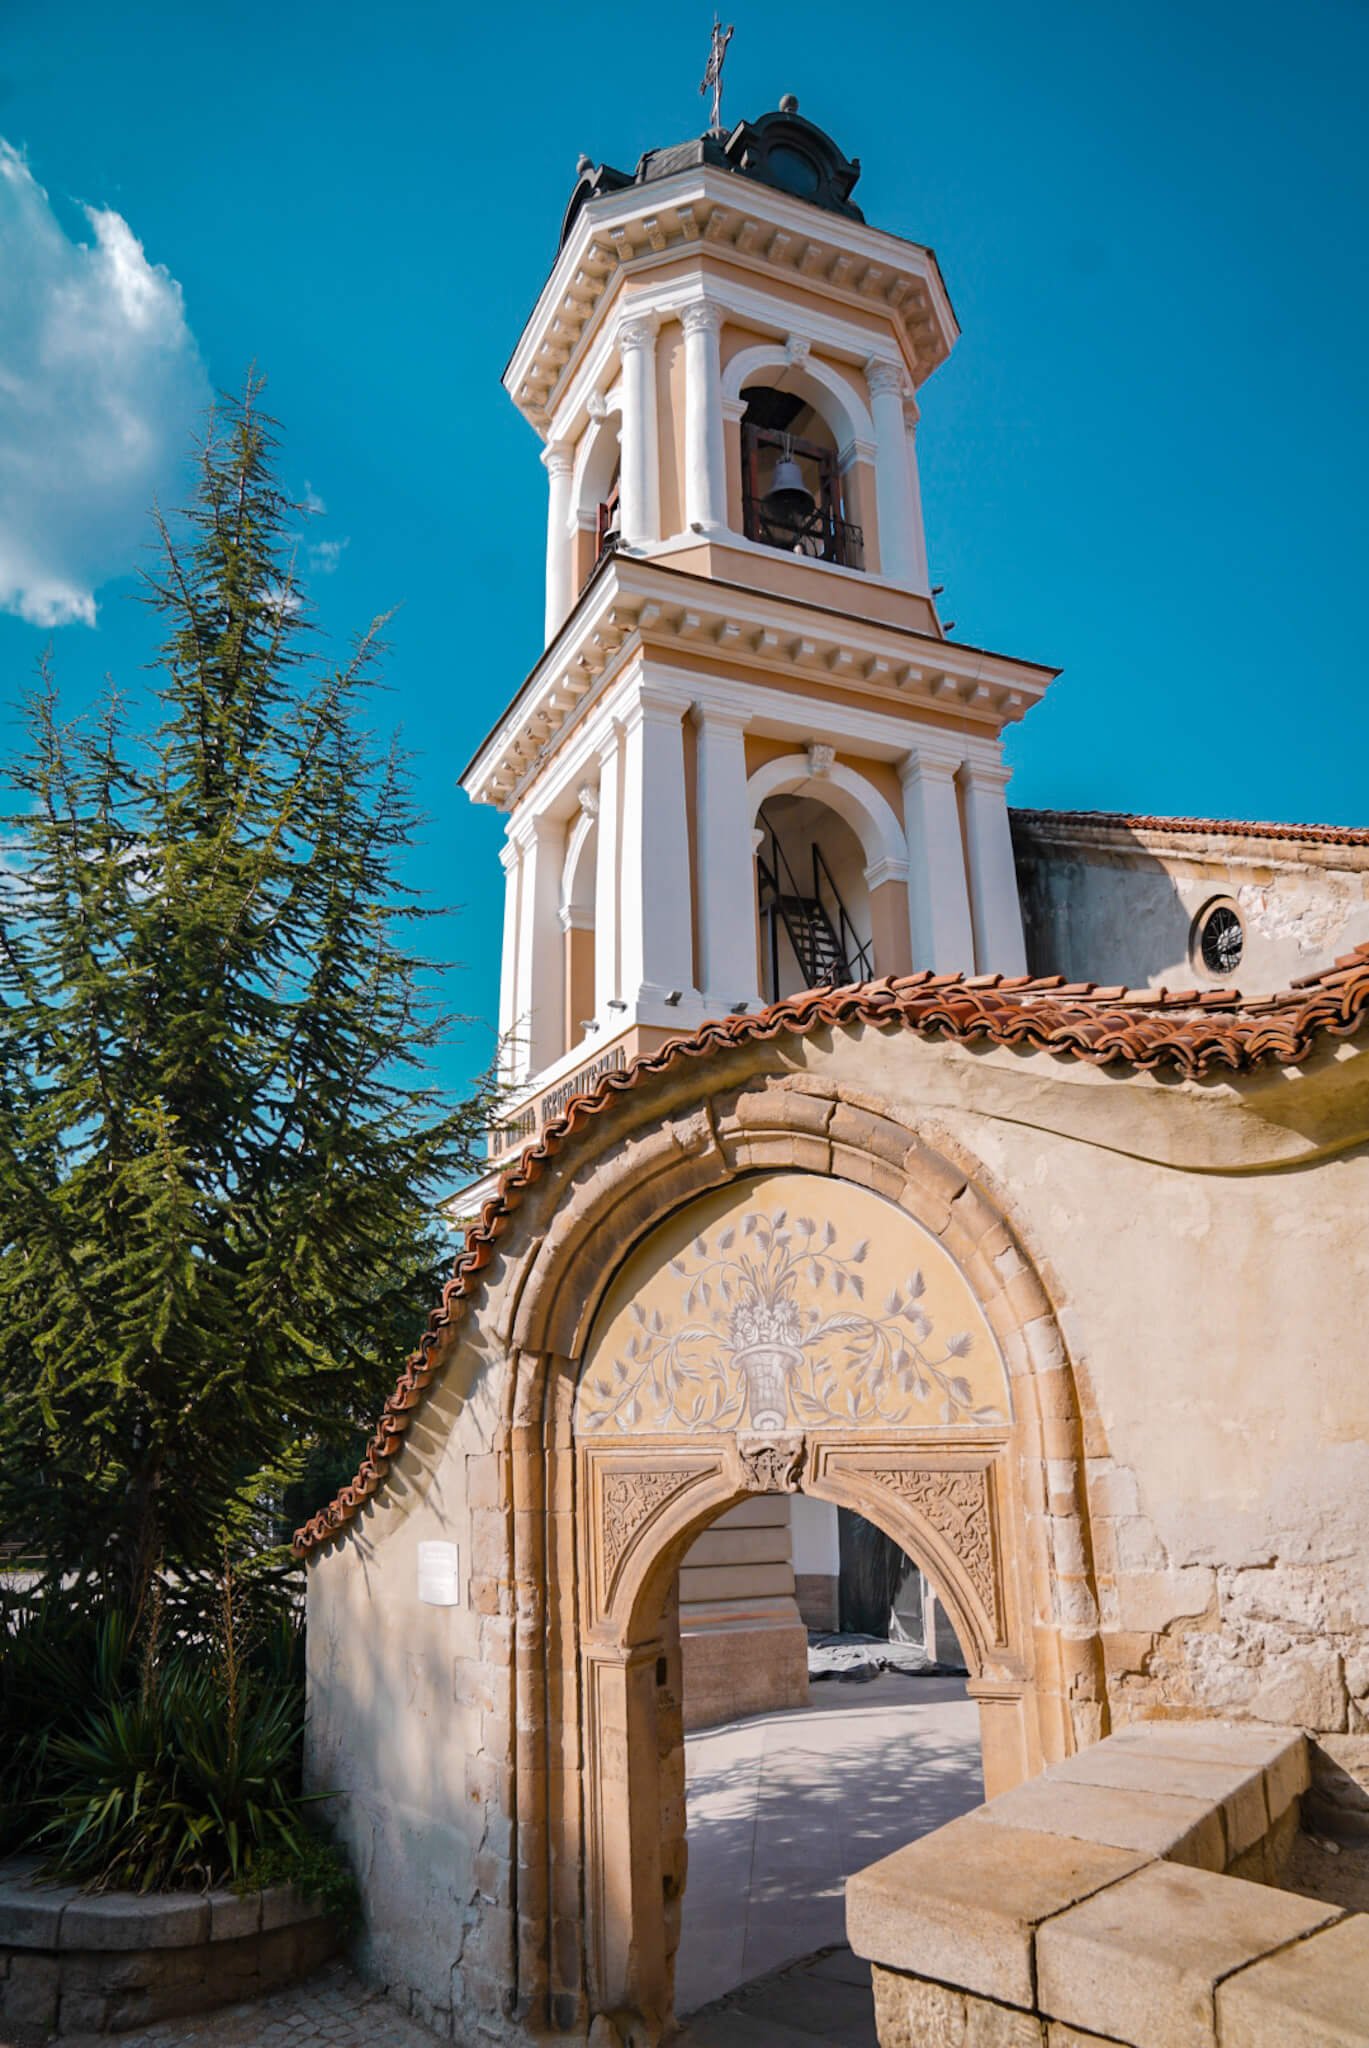 Sveta Bogoroditsa Church in Plovdiv, Bulgaria